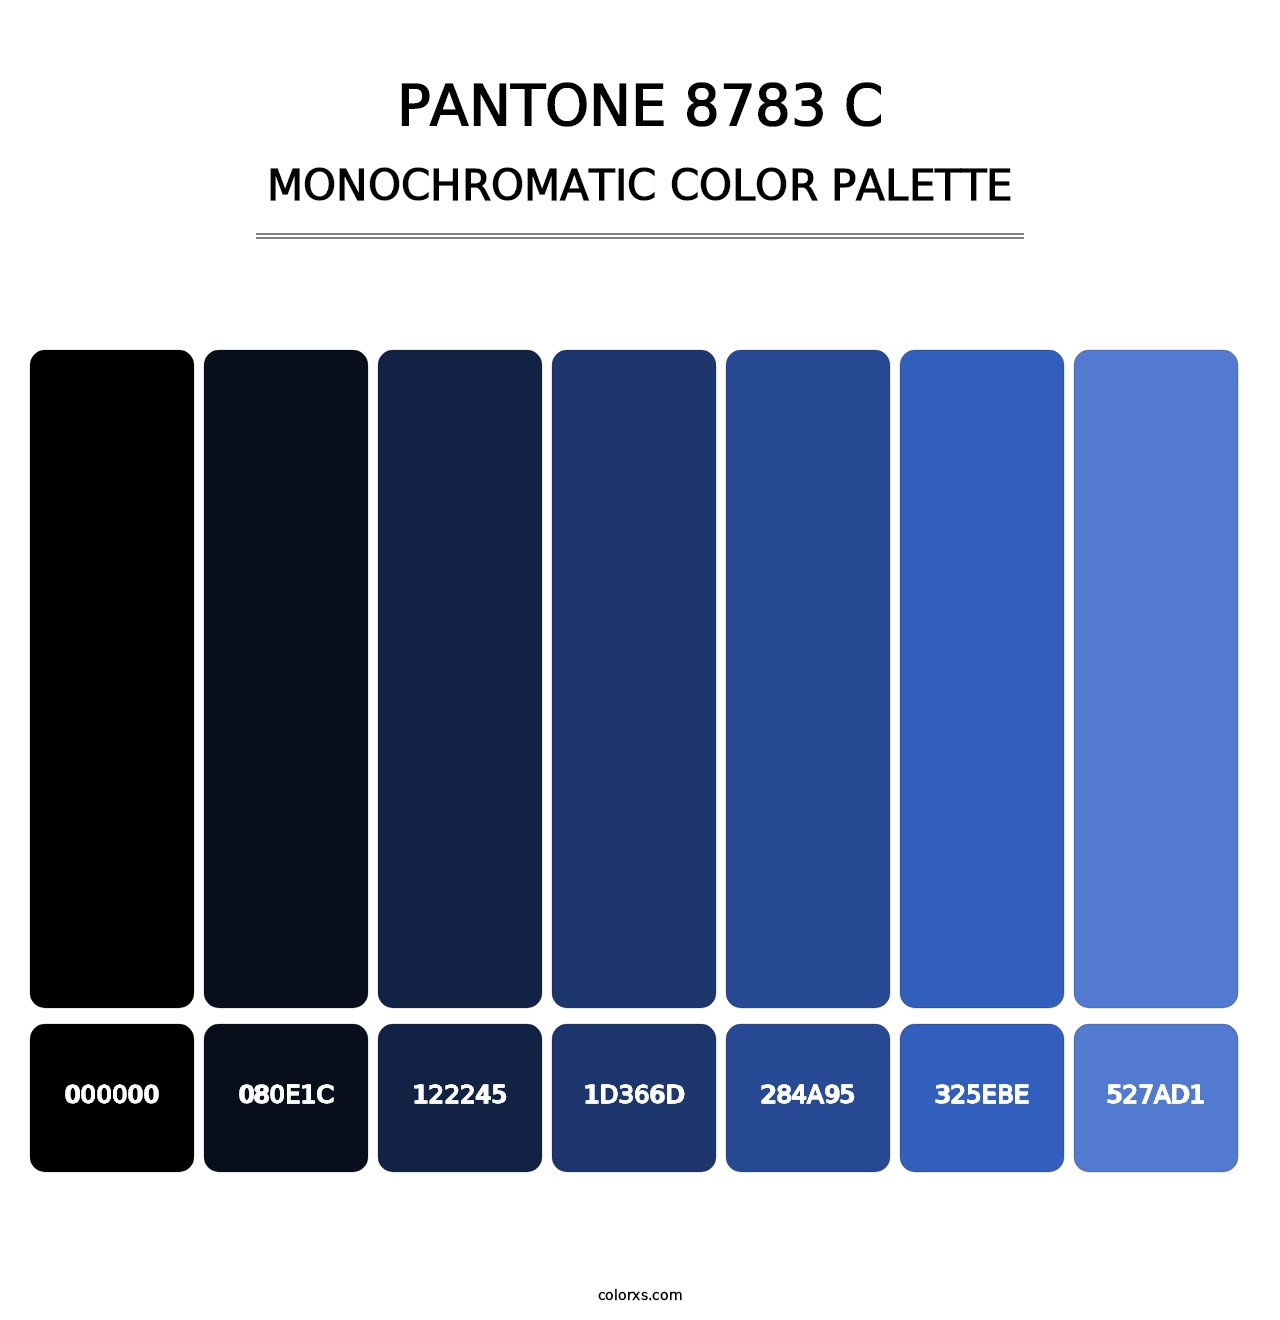 PANTONE 8783 C - Monochromatic Color Palette